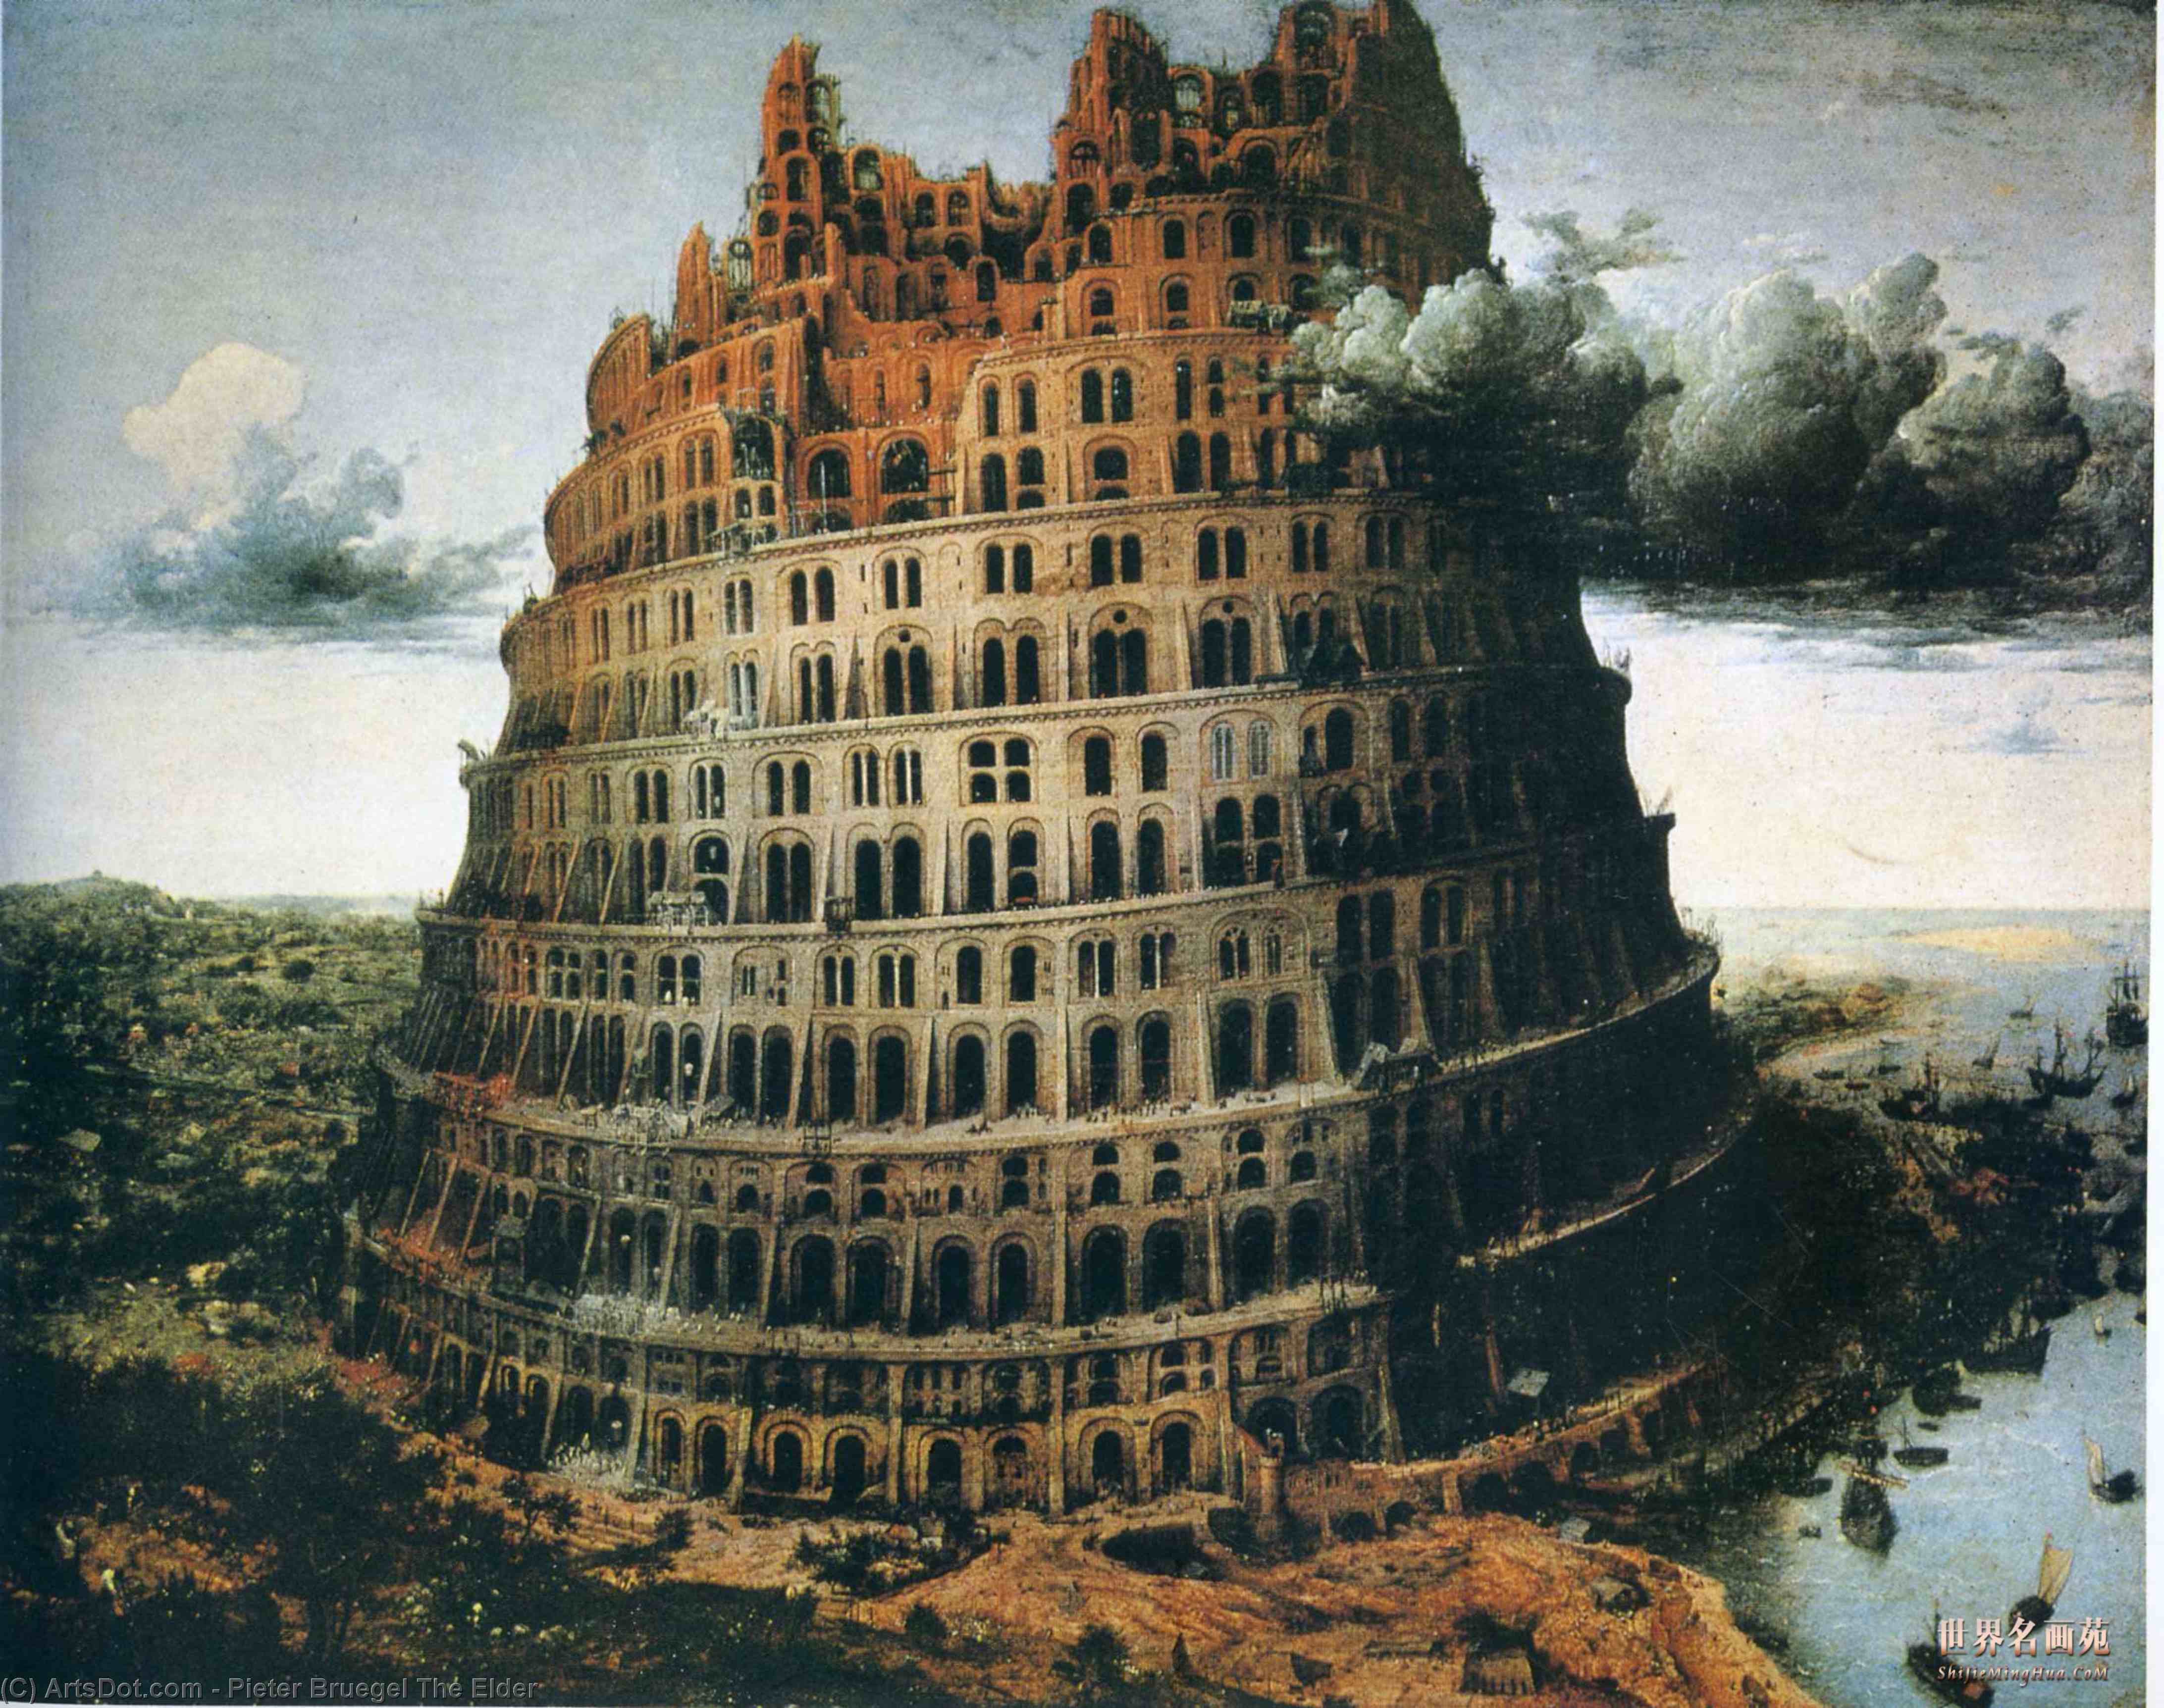 WikiOO.org - Encyclopedia of Fine Arts - Festés, Grafika Pieter Bruegel The Elder - The ''Little'' Tower of Babel